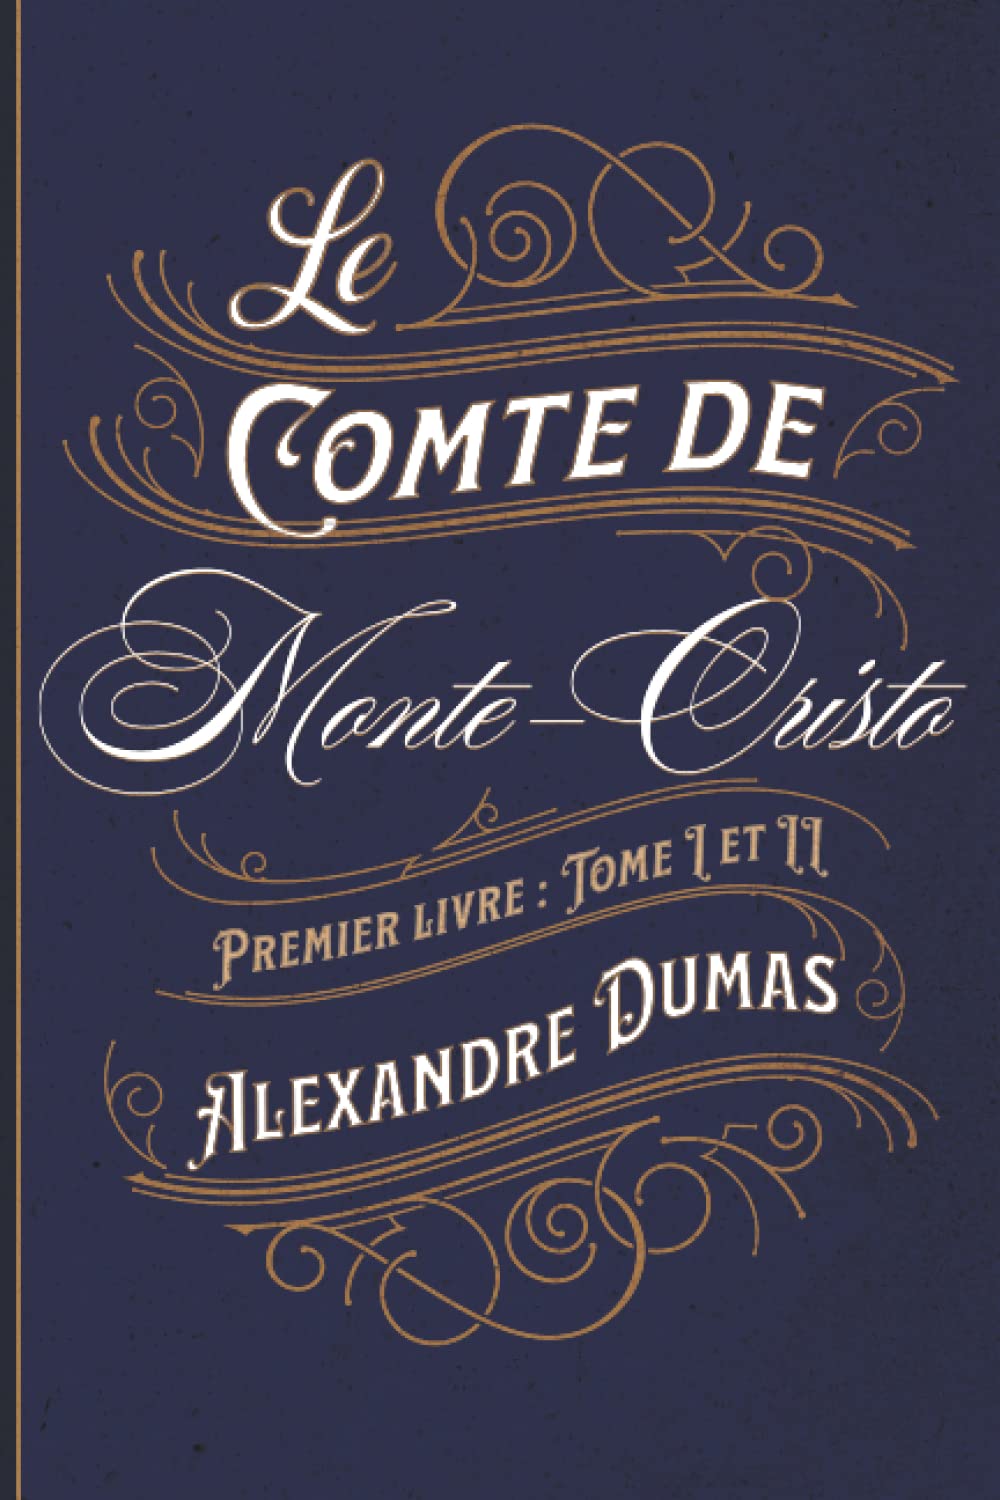 Le Comte de Monte-Cristo Premier livre : Tome I et II: Classic collector (French Edition)